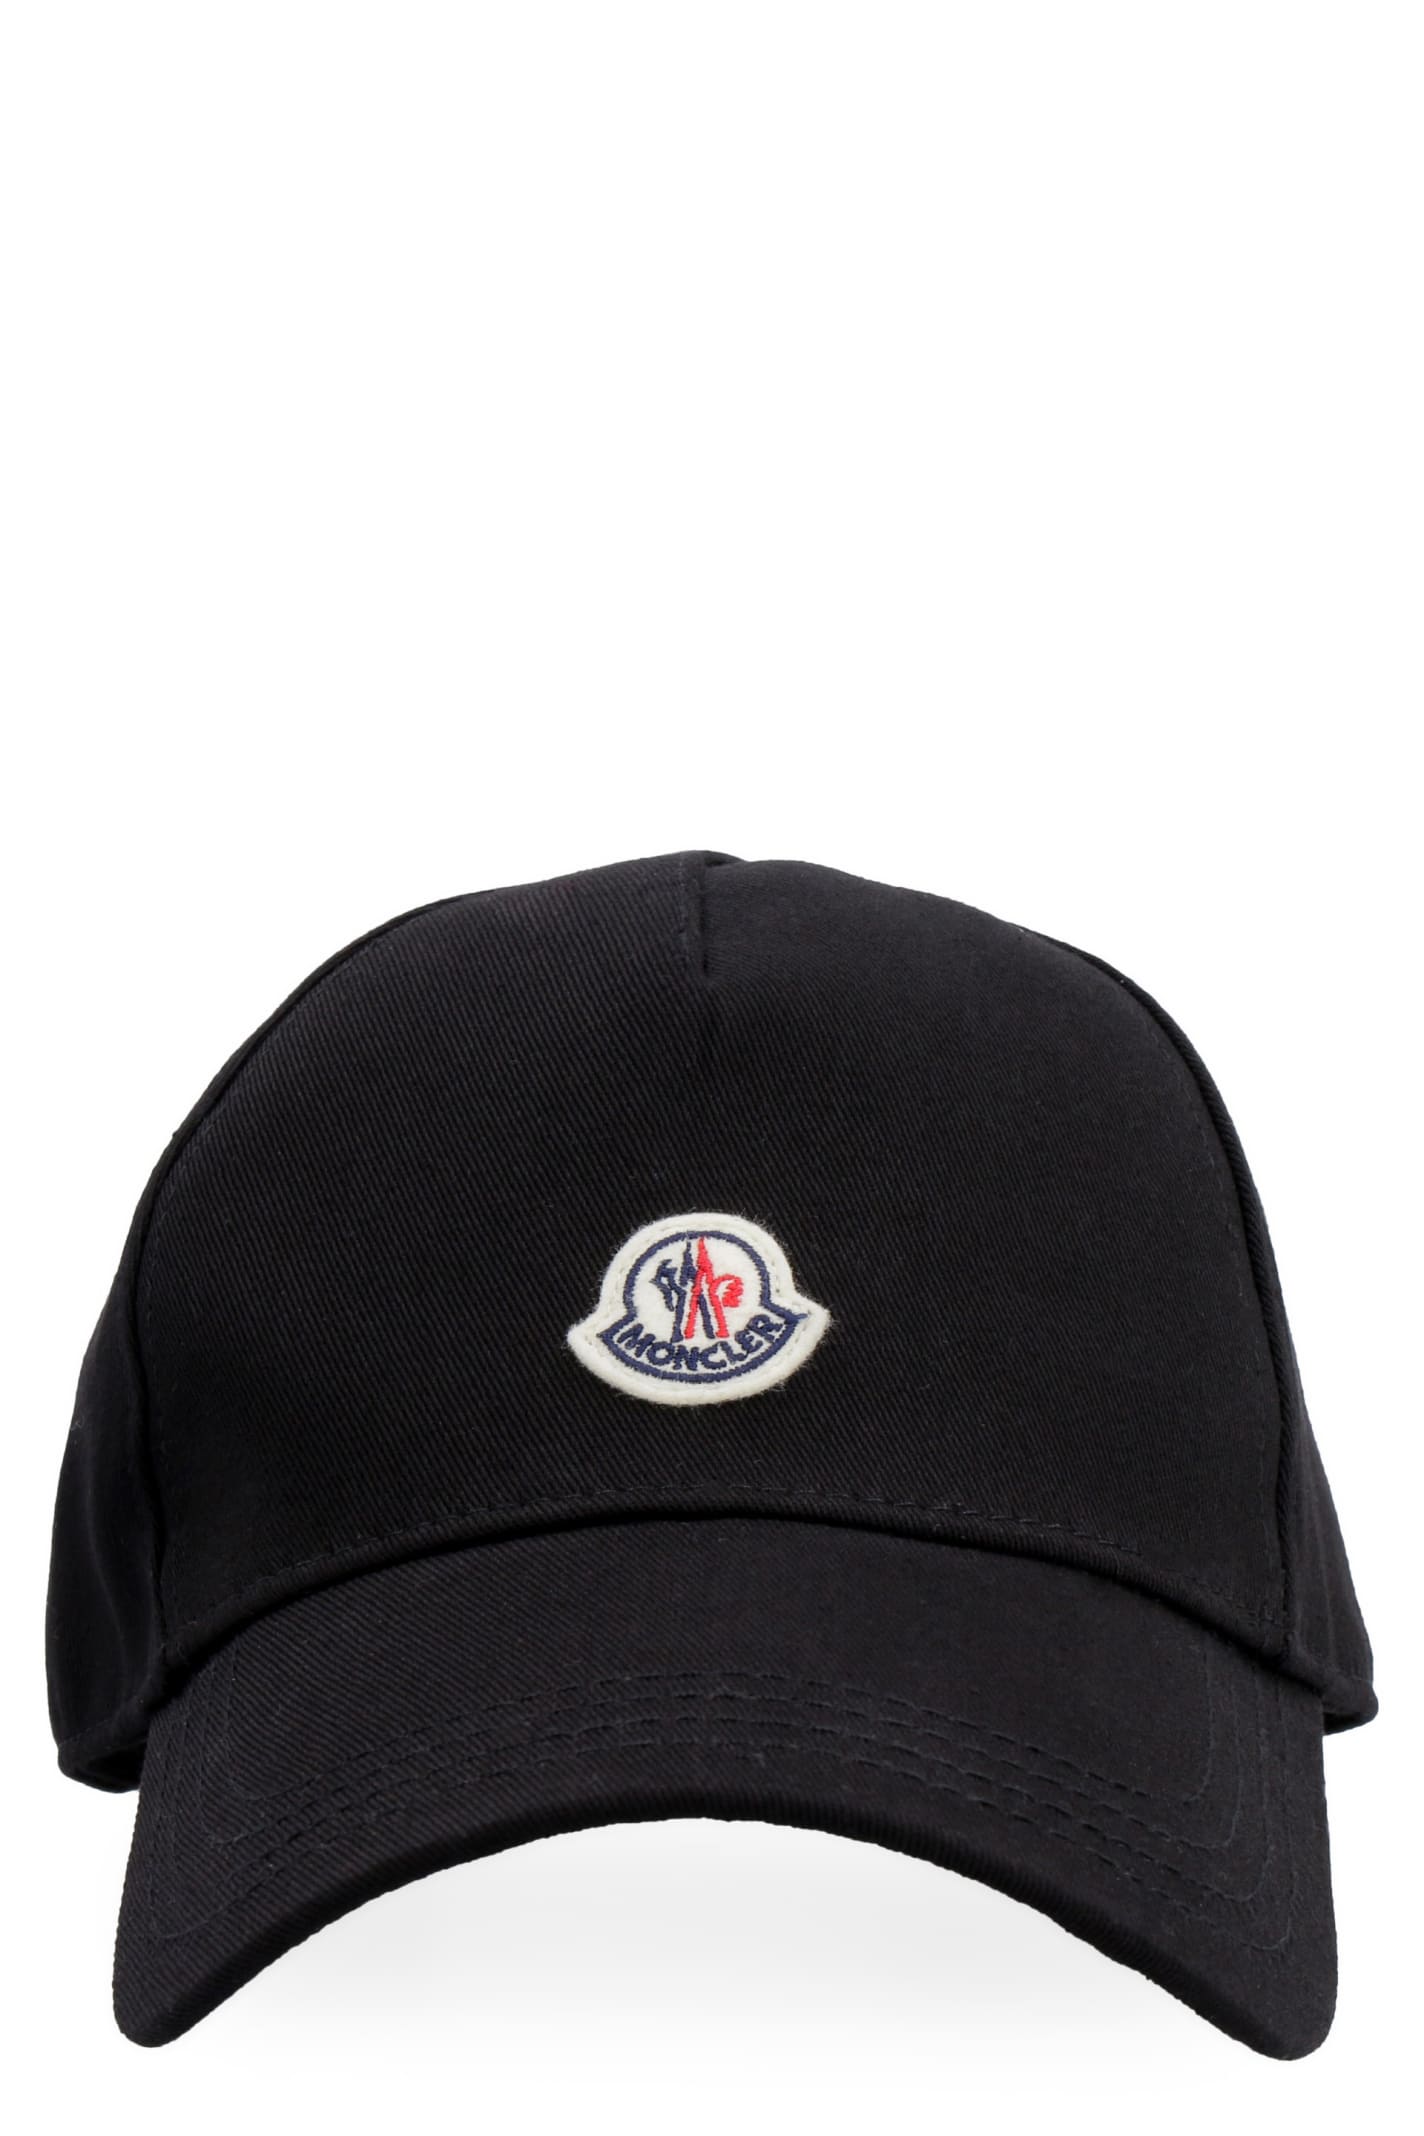 moncler cap black